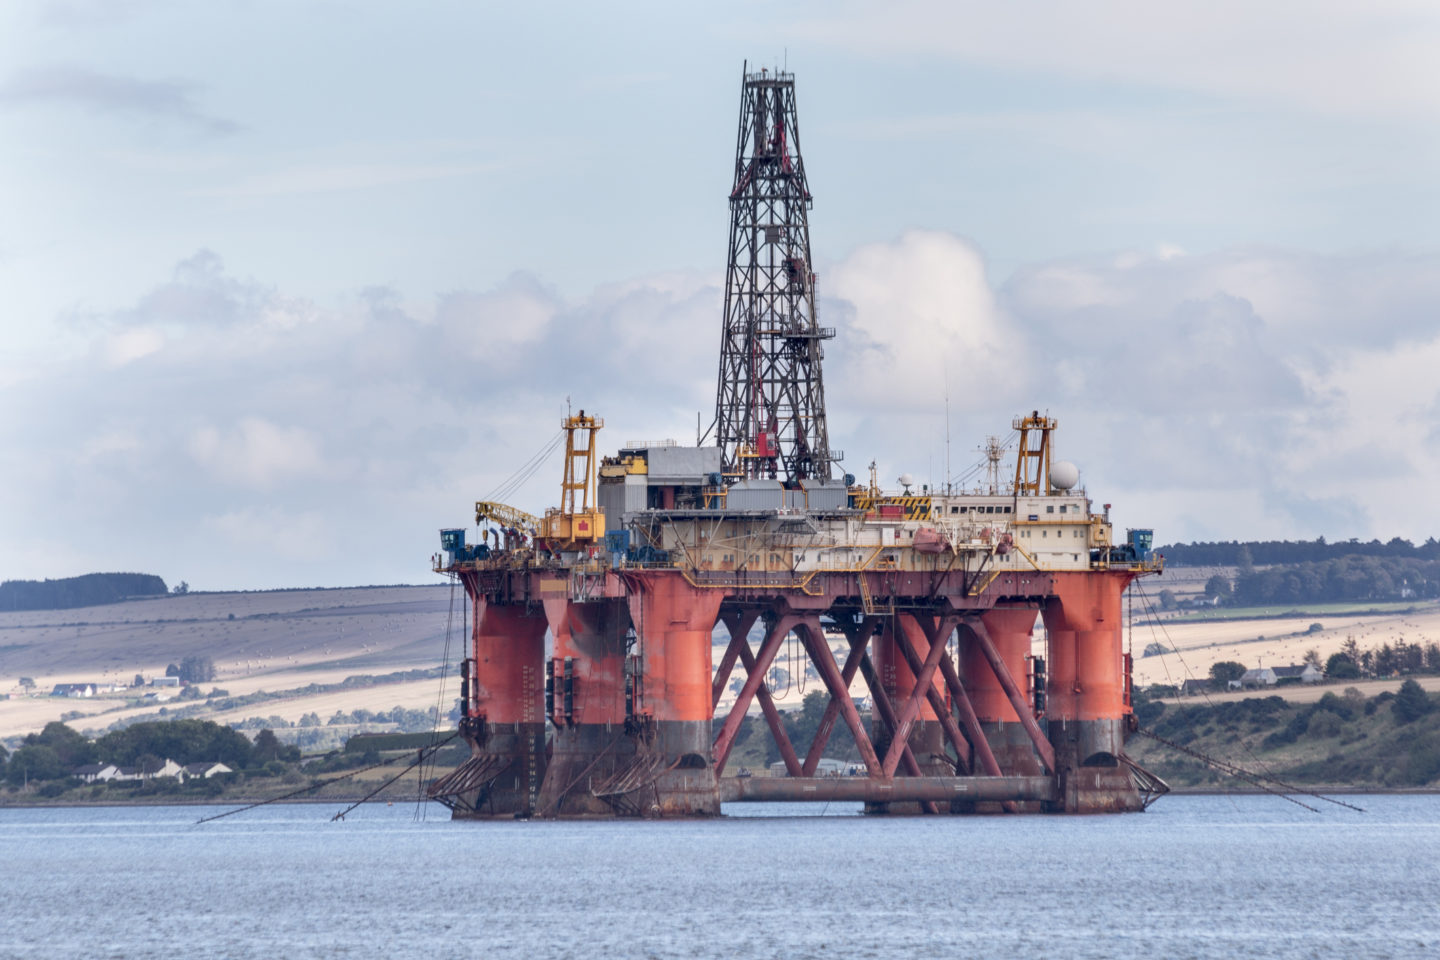 North Sea oil